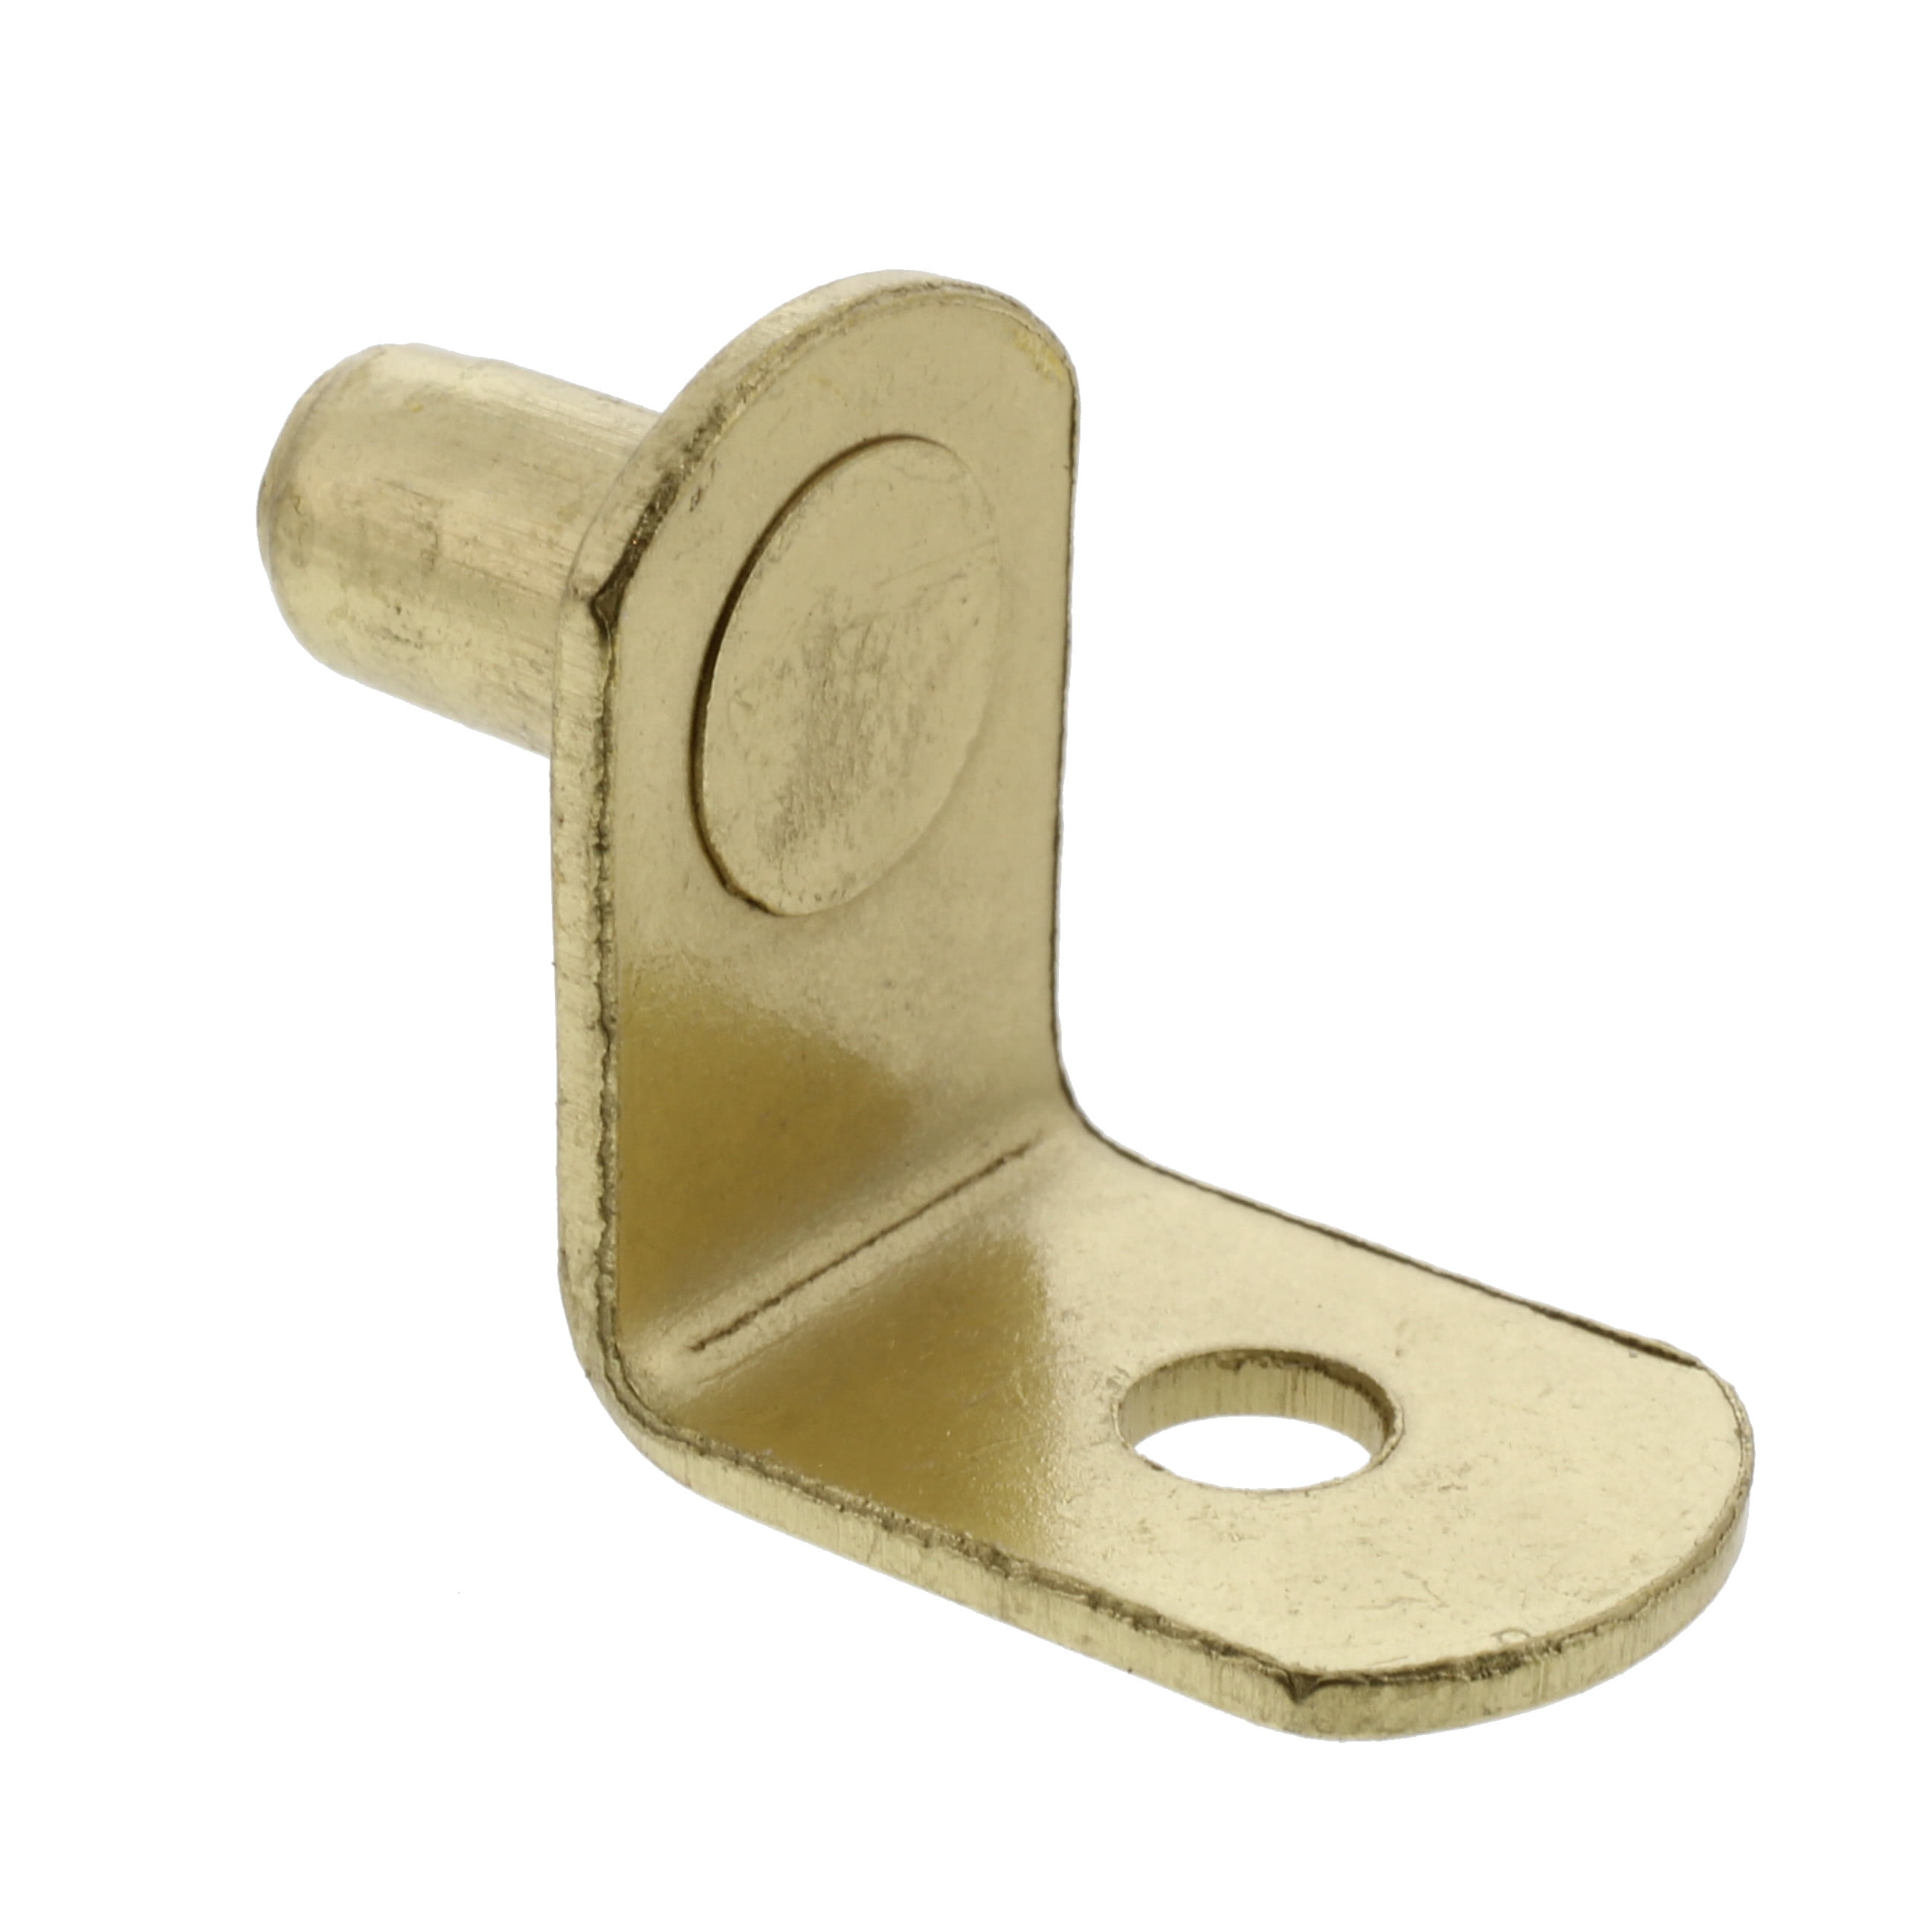 L Shaped Steel Shelf Support Pin Clips Cabinet Bracket Pegs 1/4" Brass 100 Pcs 